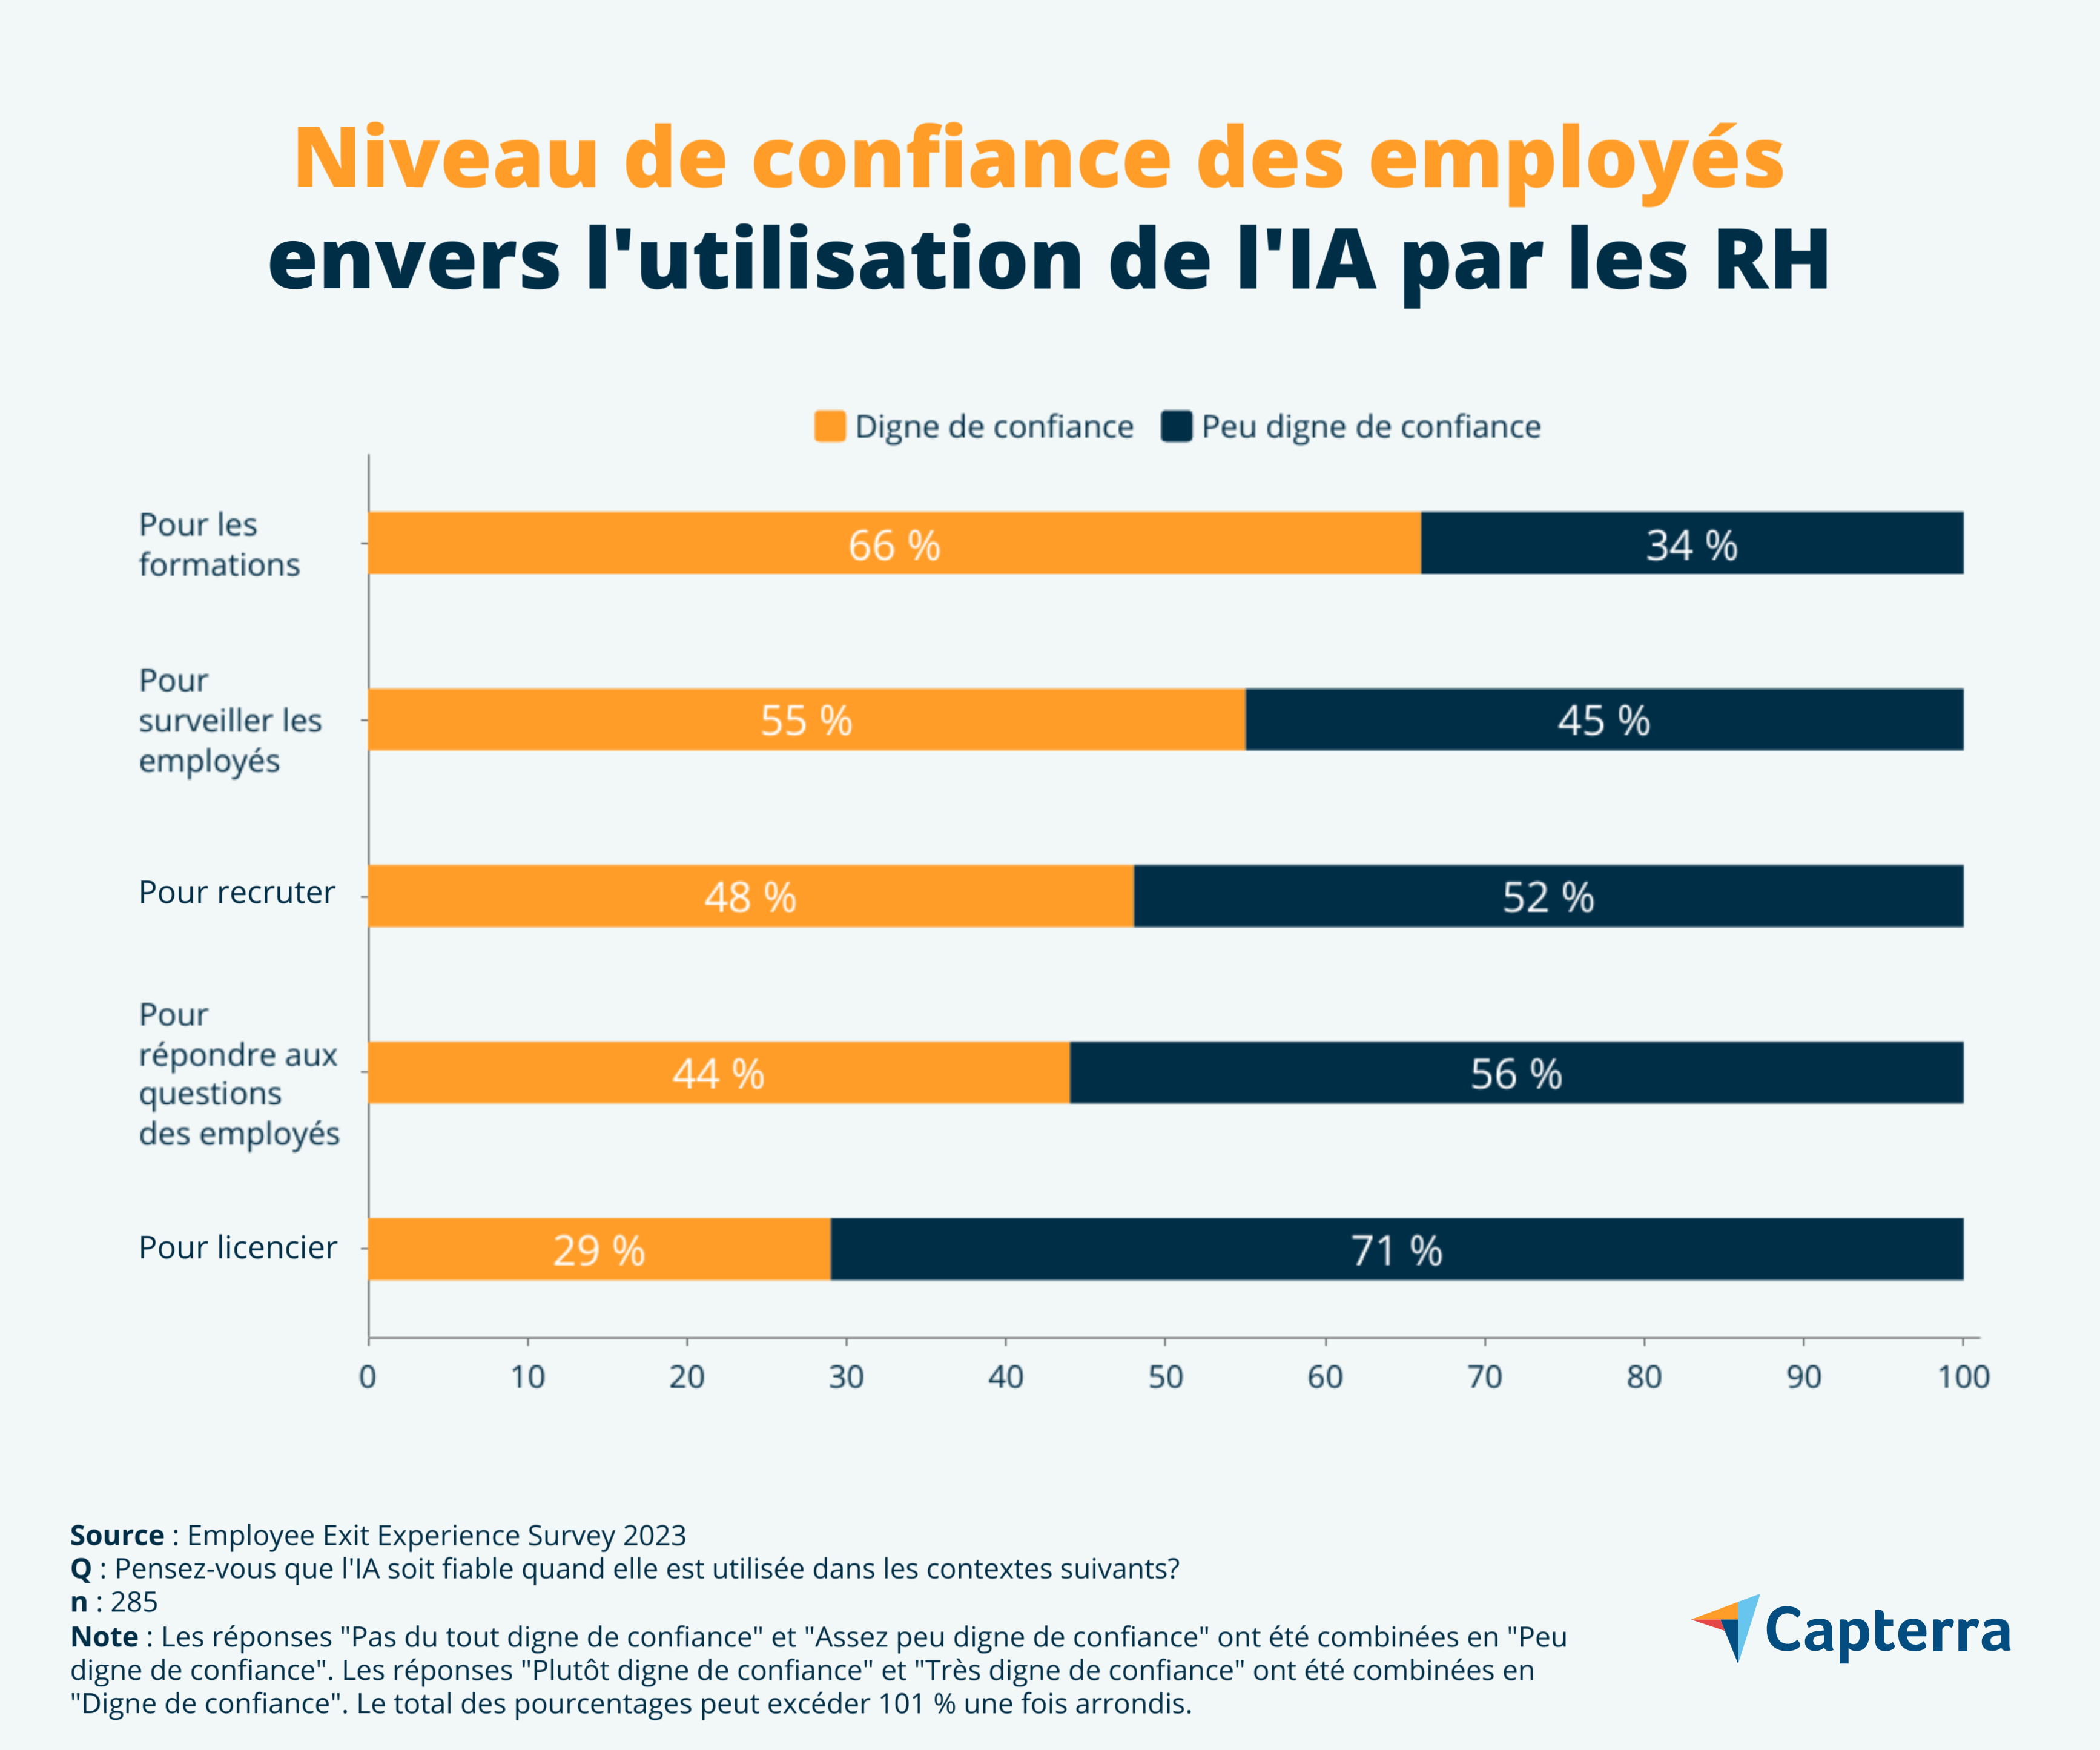 Niveaux de confiance des employés envers l'utilisation de l'IA par les RH